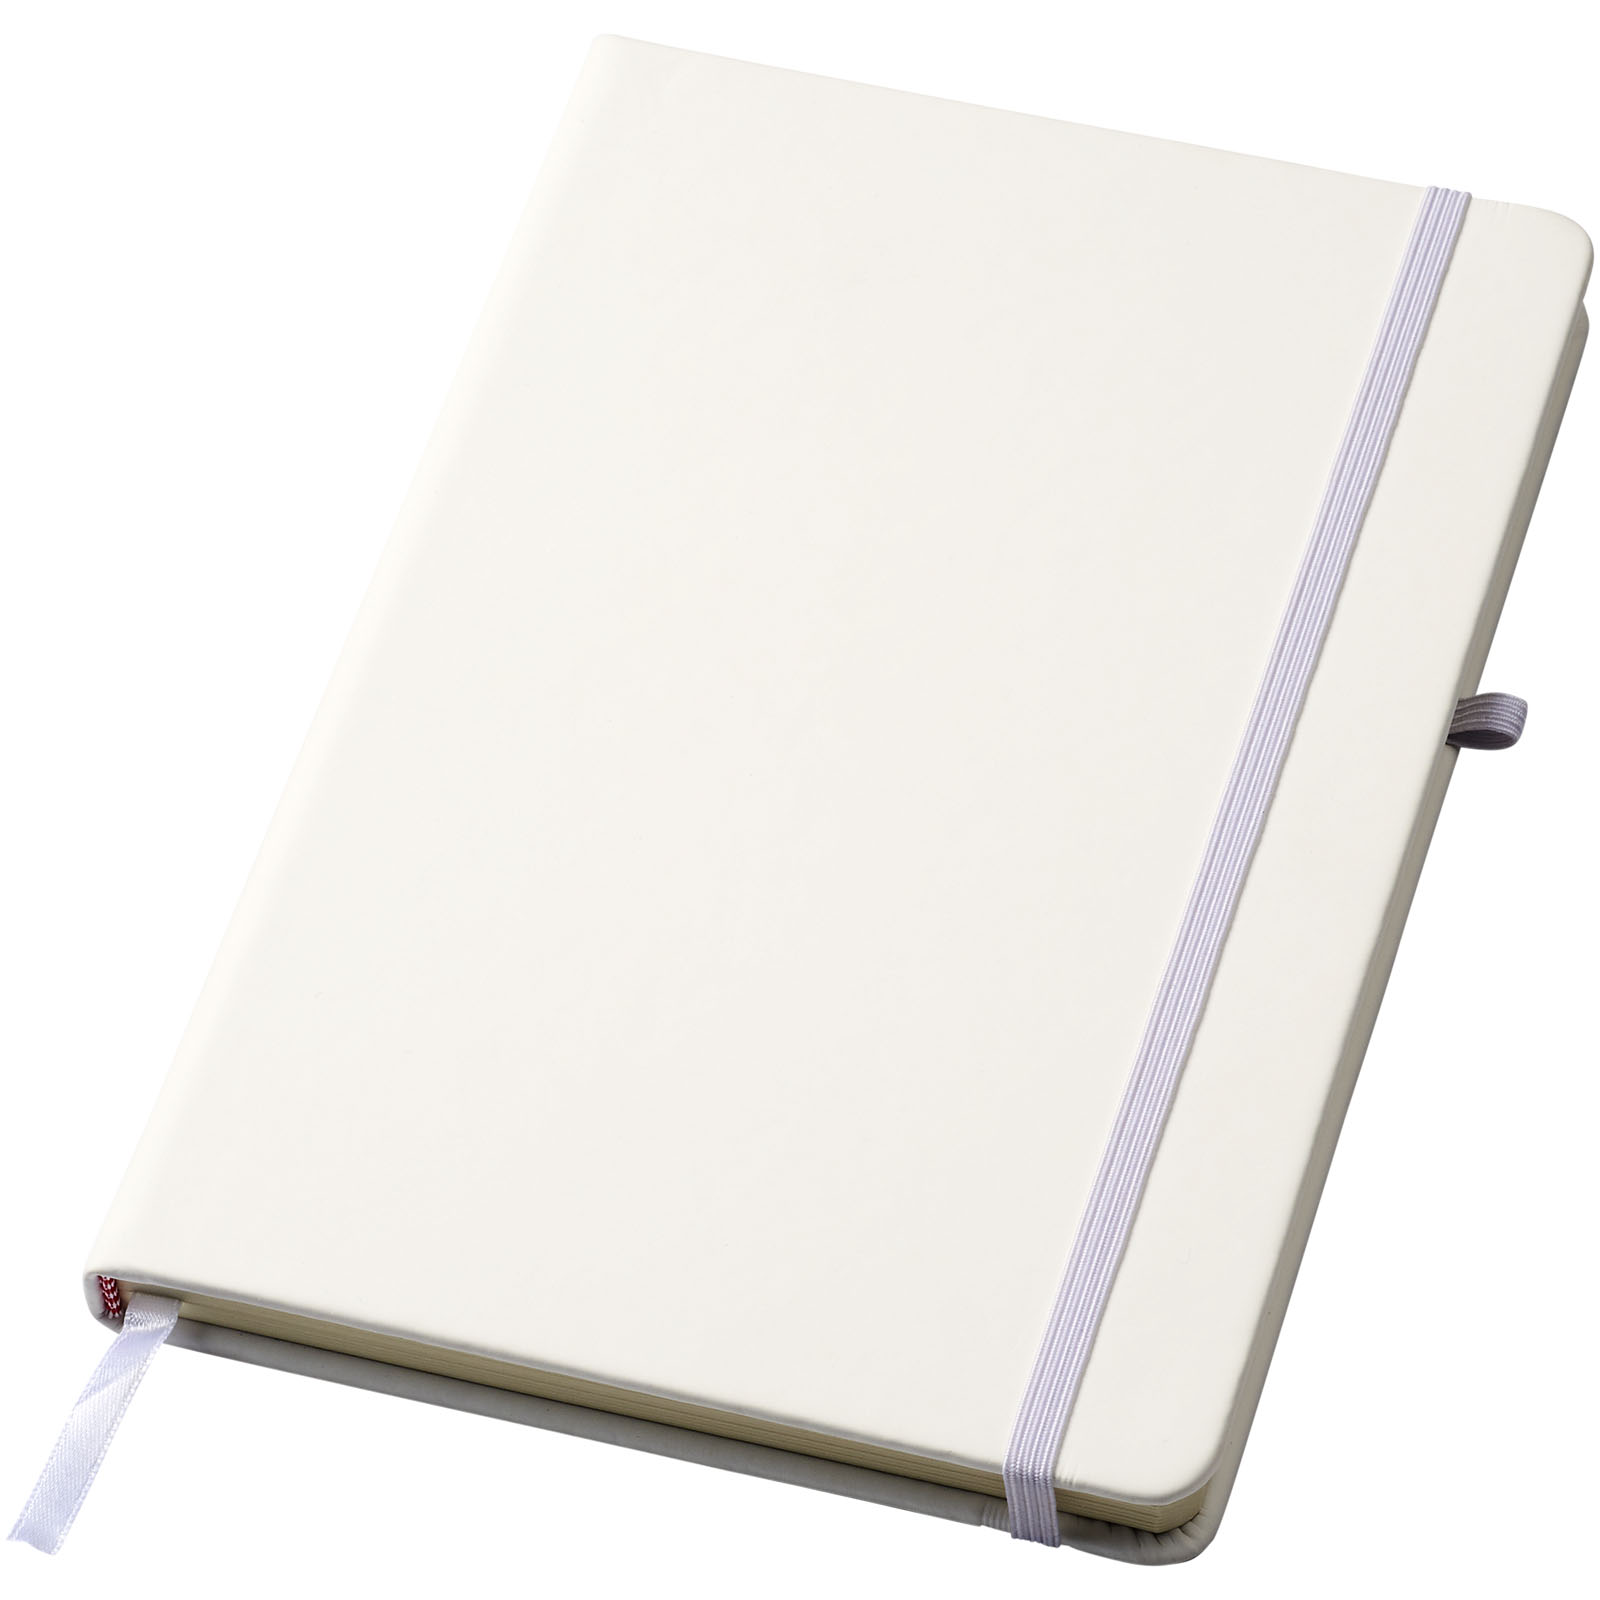 Blocs-notes et essentiels pour le bureau - Carnet A5 avec papier ligné Polar